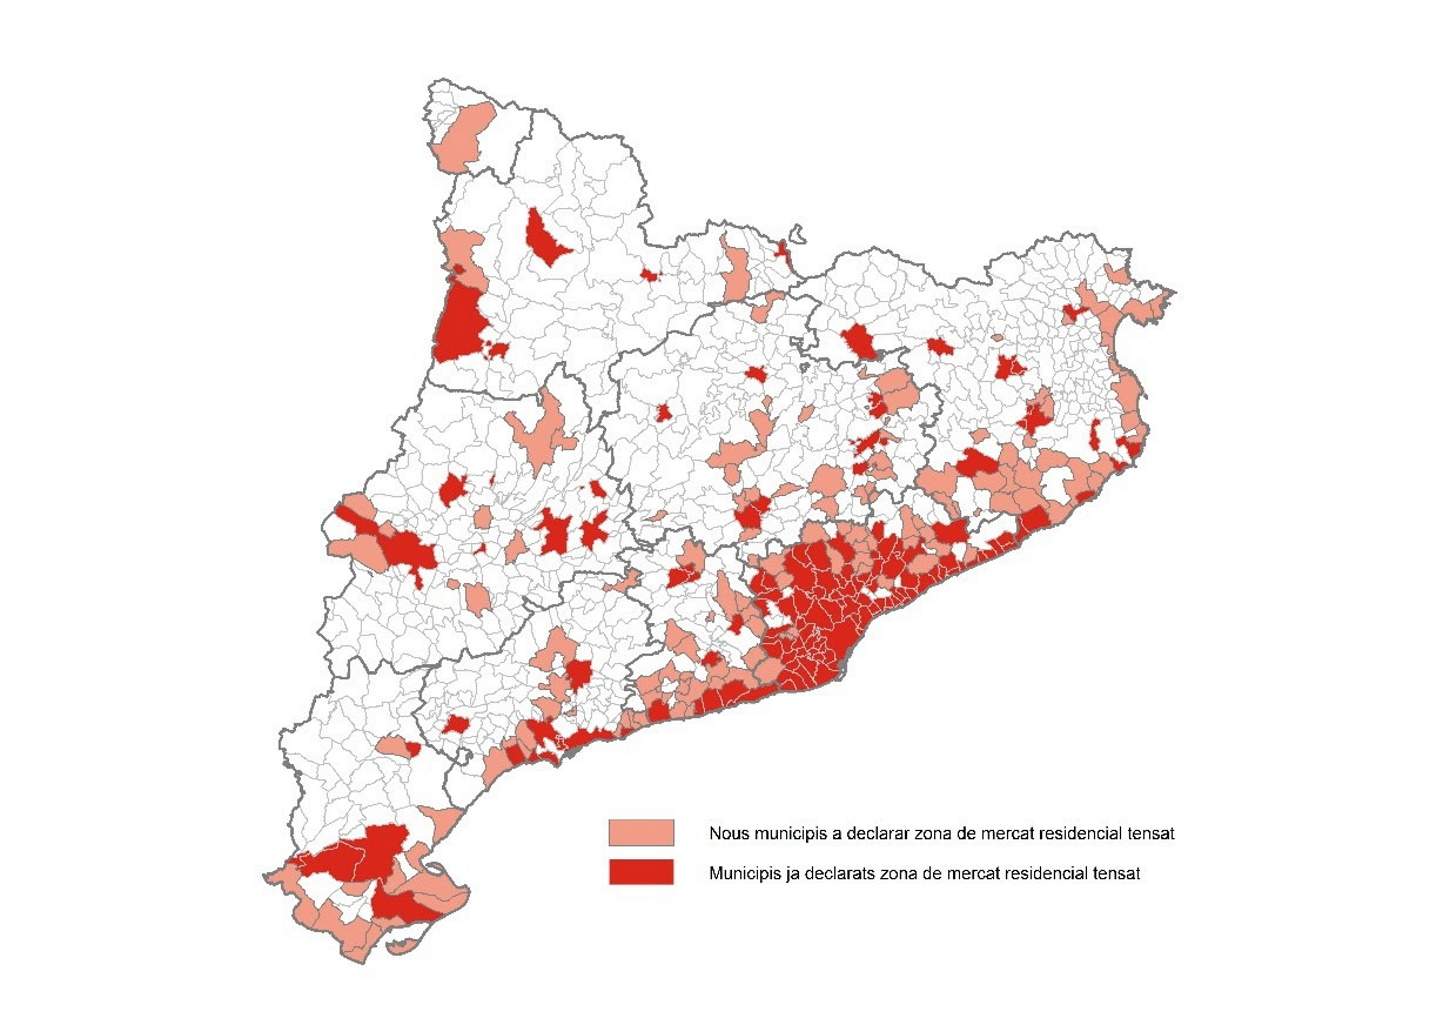 Zones tensionades a Catalunya | Territori